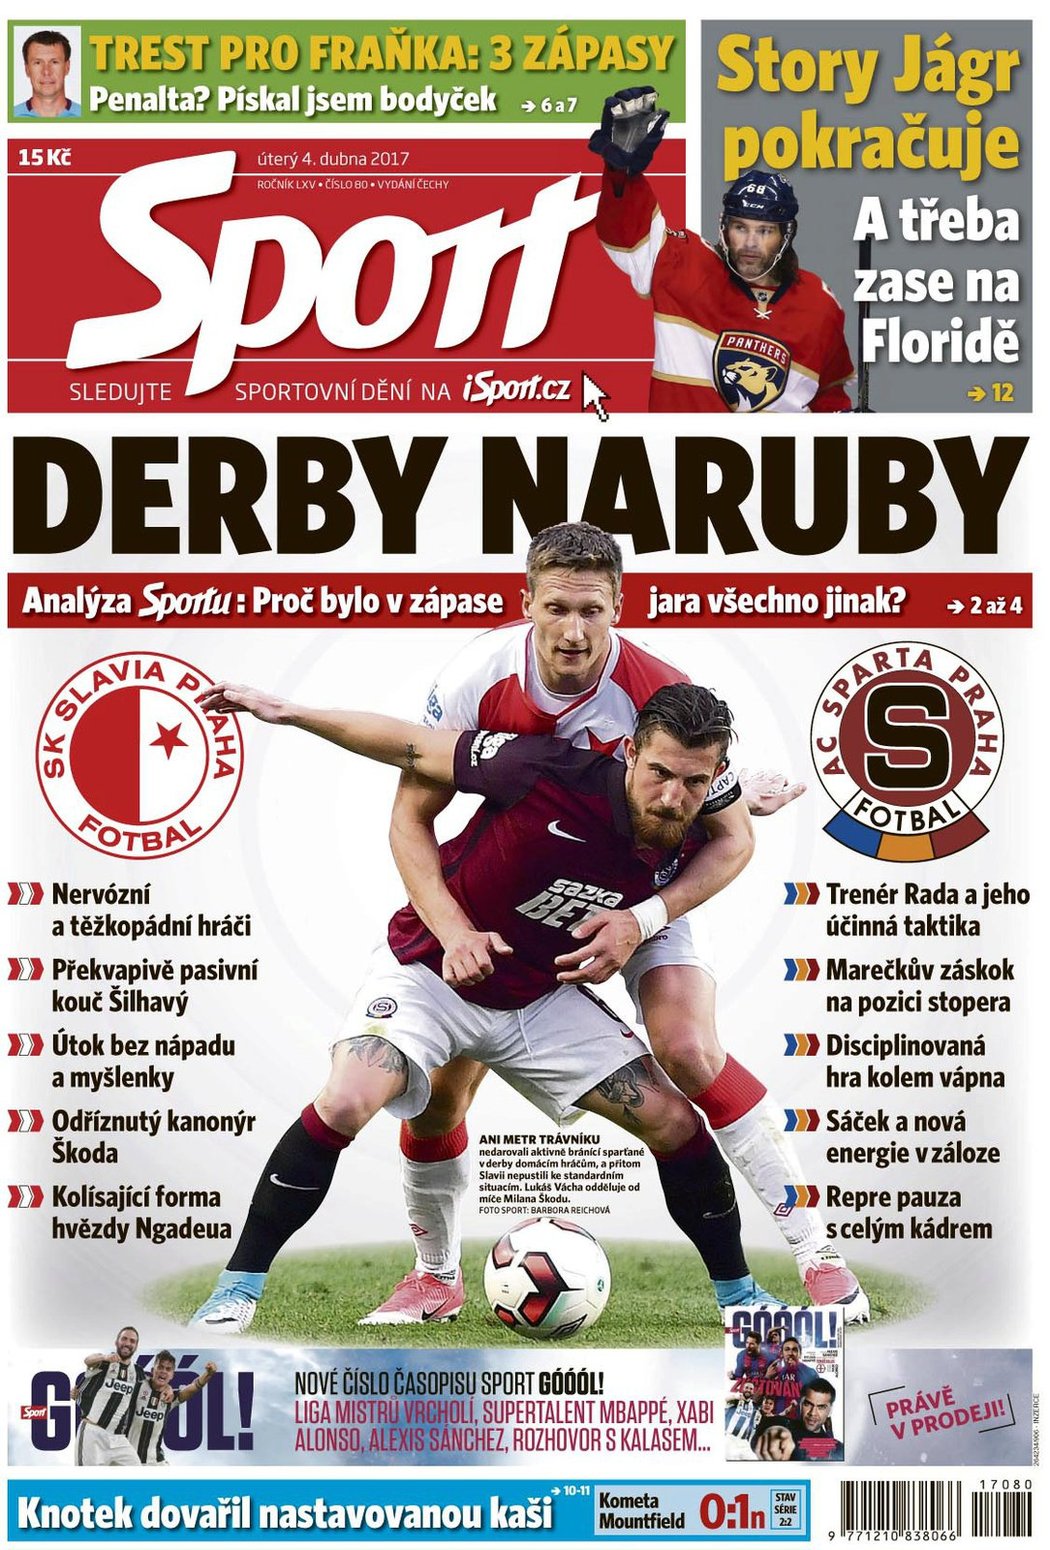 Titulní strana úterního deníku Sport